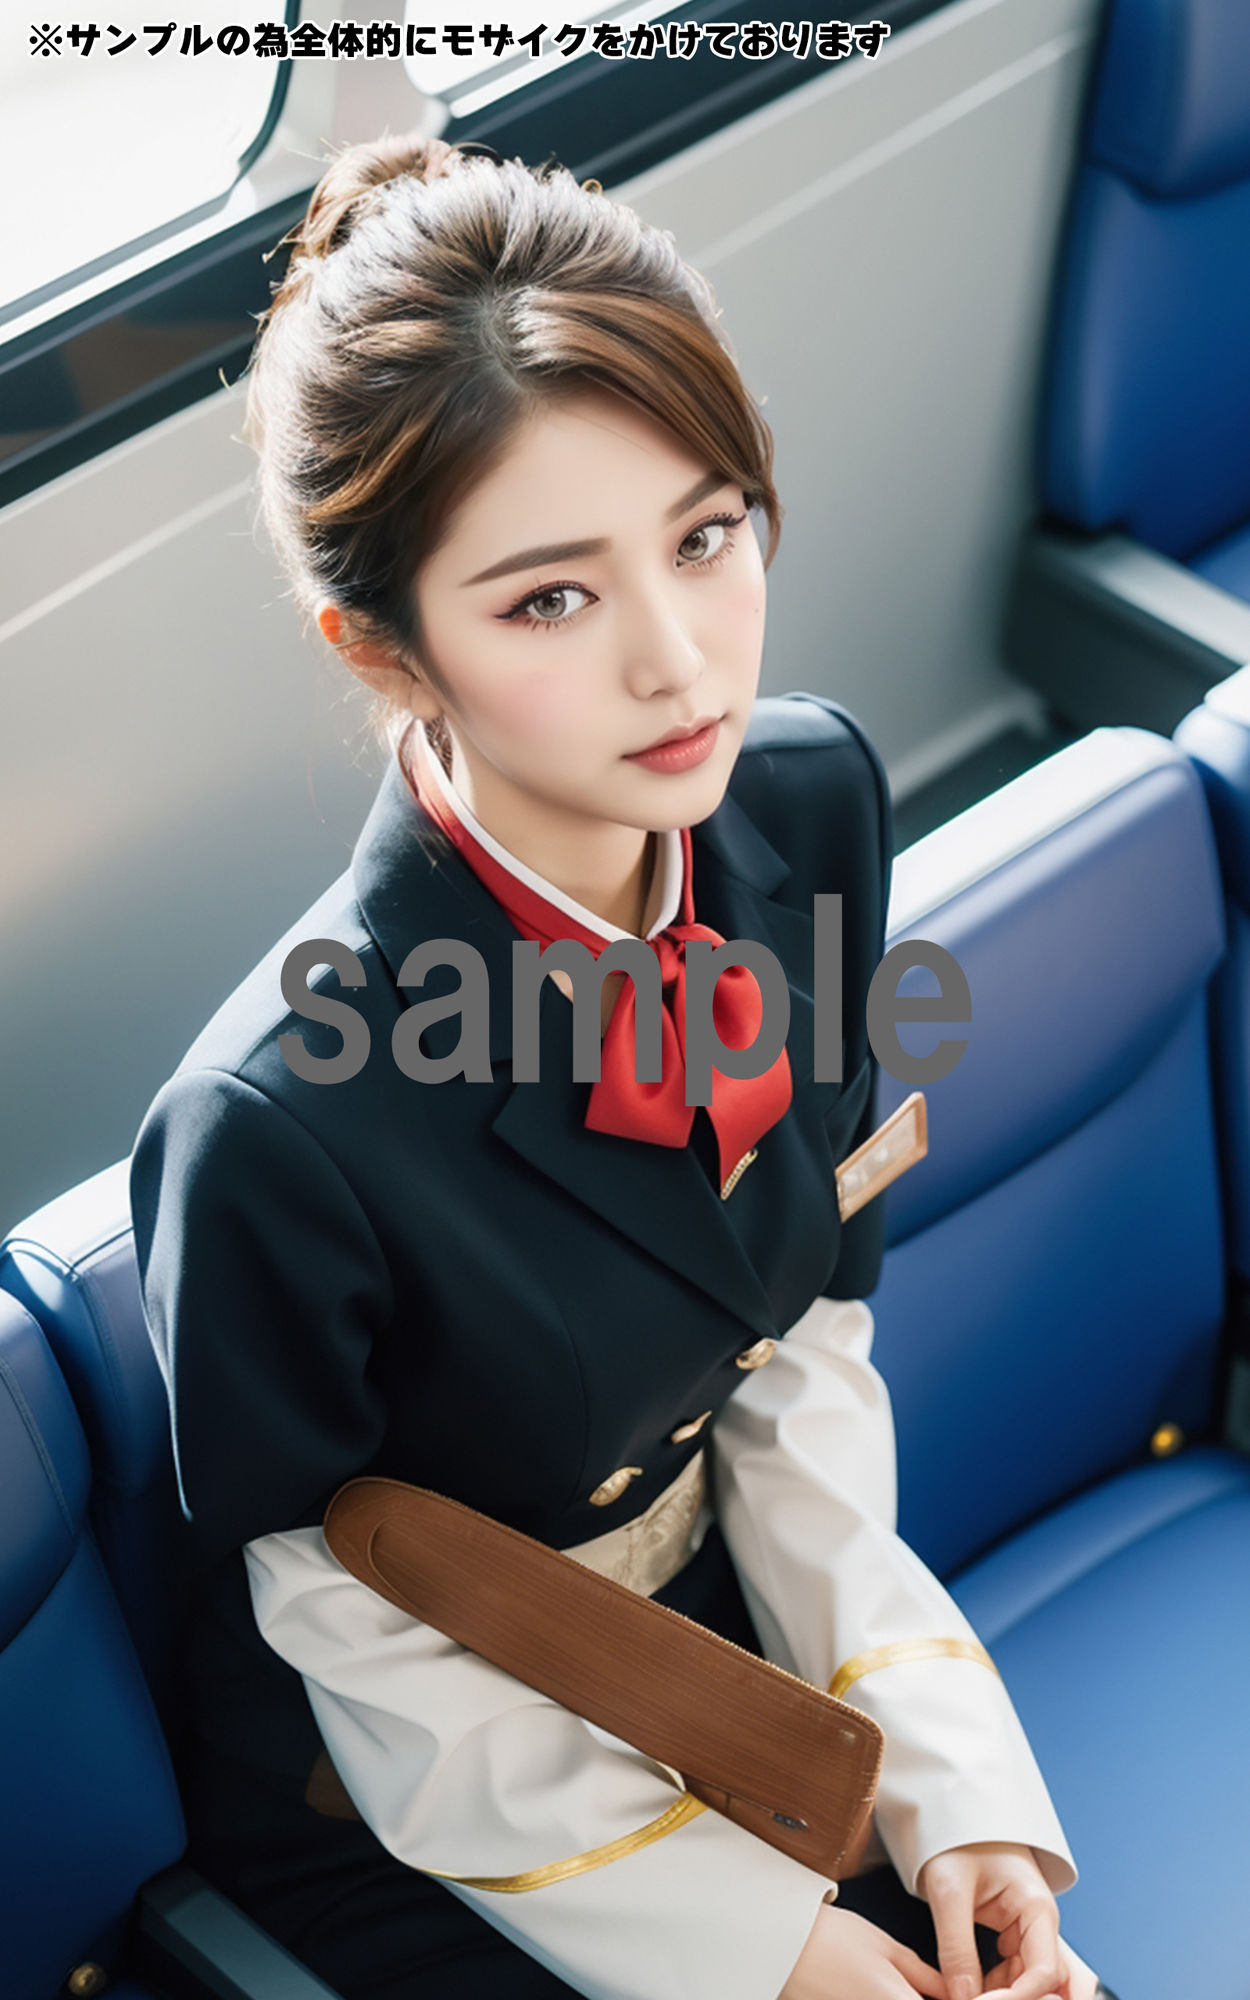 【全424枚】 「客室乗務員」 ケツアナ航空 -キャビンアテンダントの制服姿と裏事情- -AIで描く究極の美女達-_6